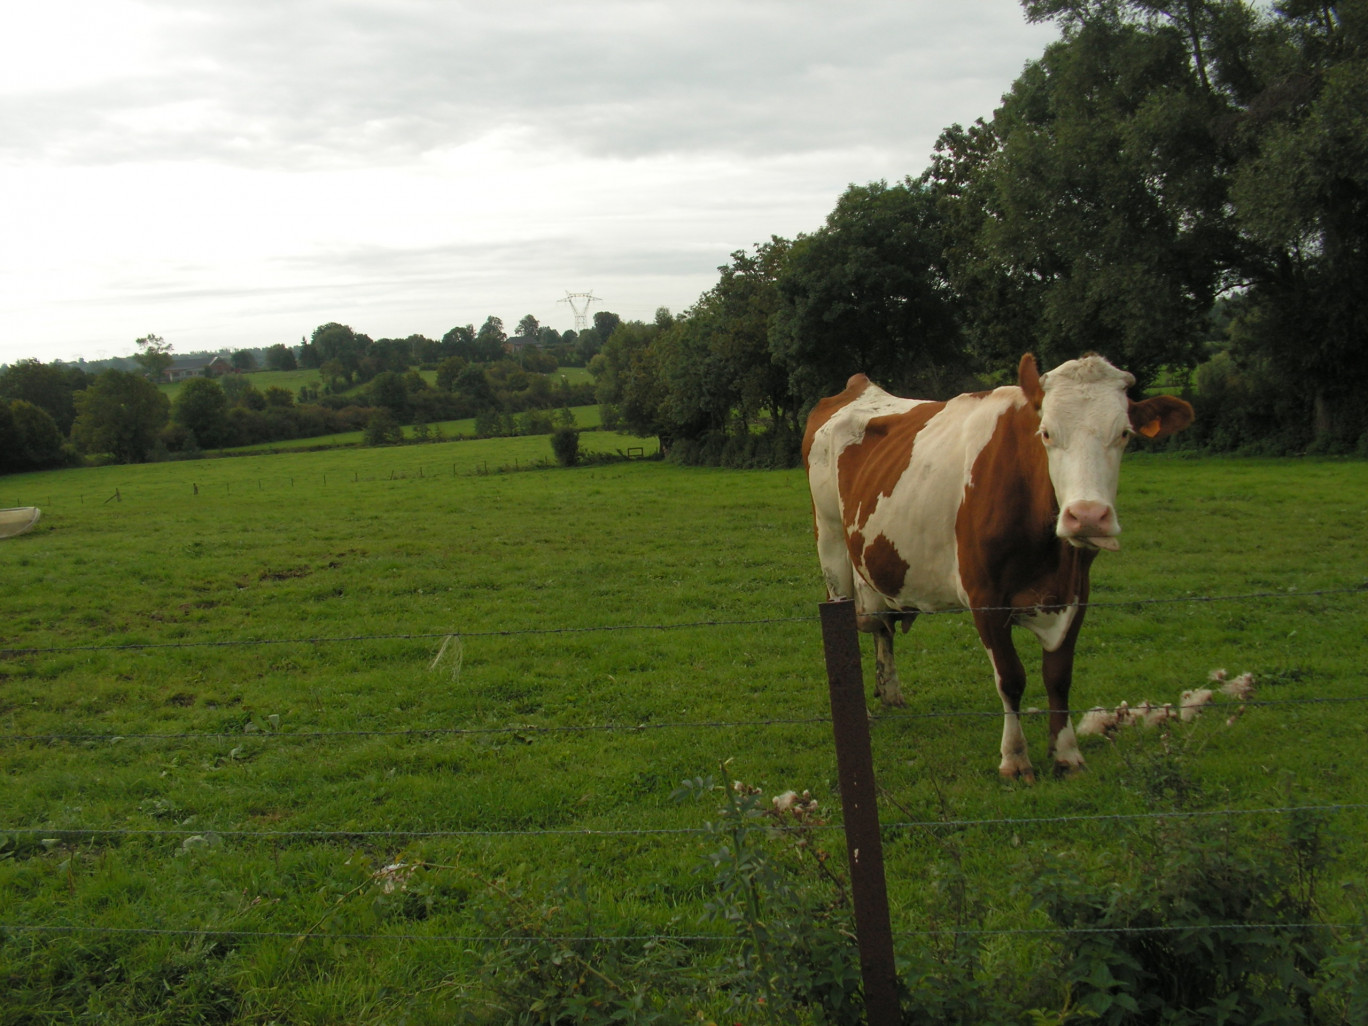 Photo prise dans le bocage de l’Avesnois Thiérache, là où les troupeaux sont en moyenne plus importants.